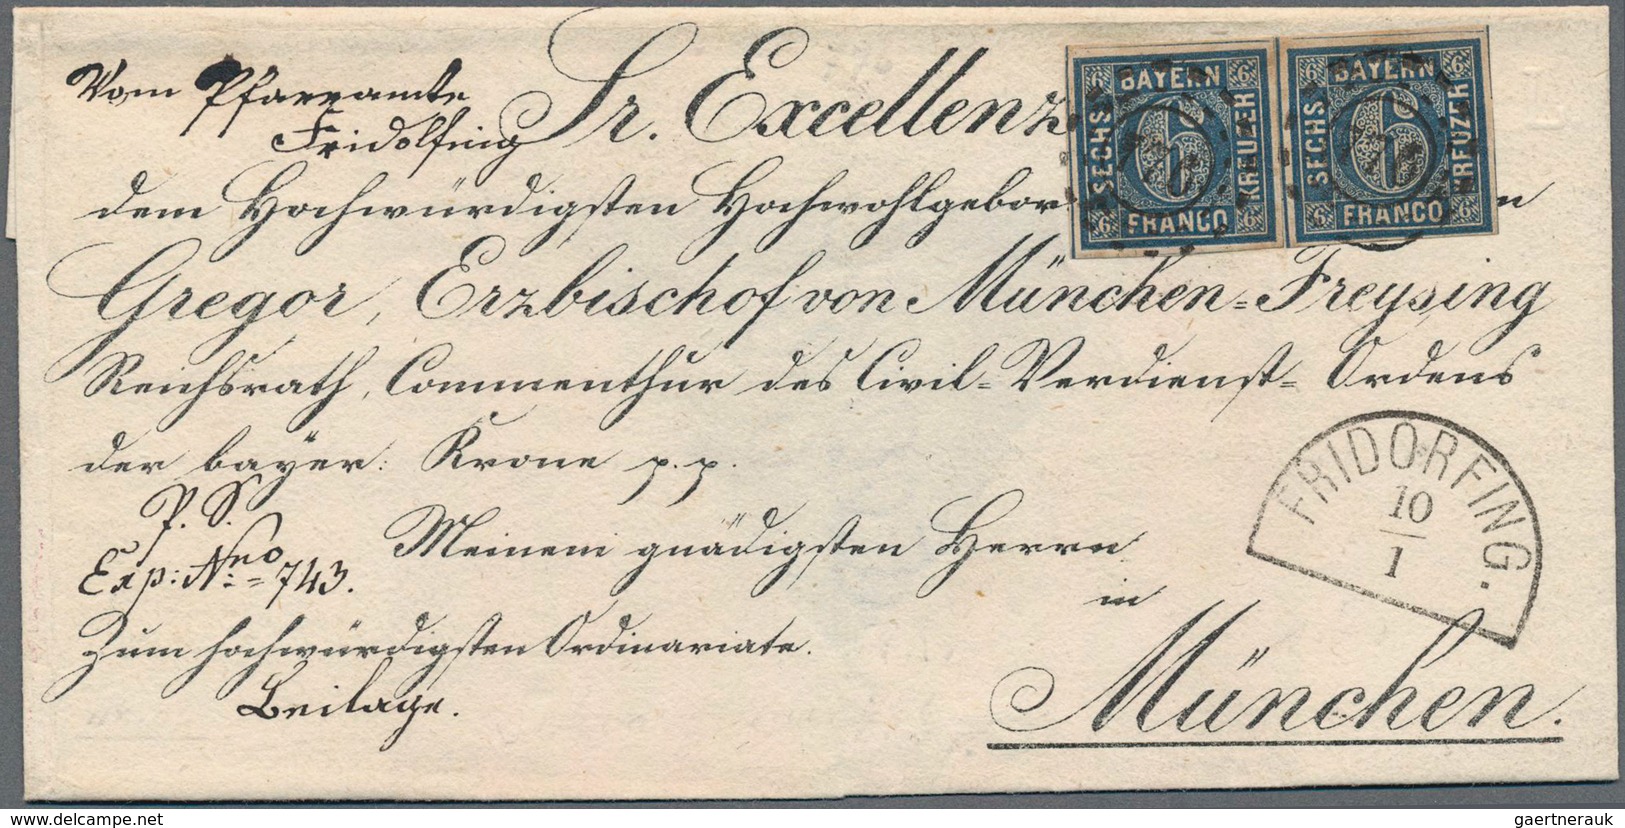 Bayern - Marken und Briefe: Bischofsbriefe 1850/1862 16 sog. Bischofsbriefe, adressiert an Carl Augu